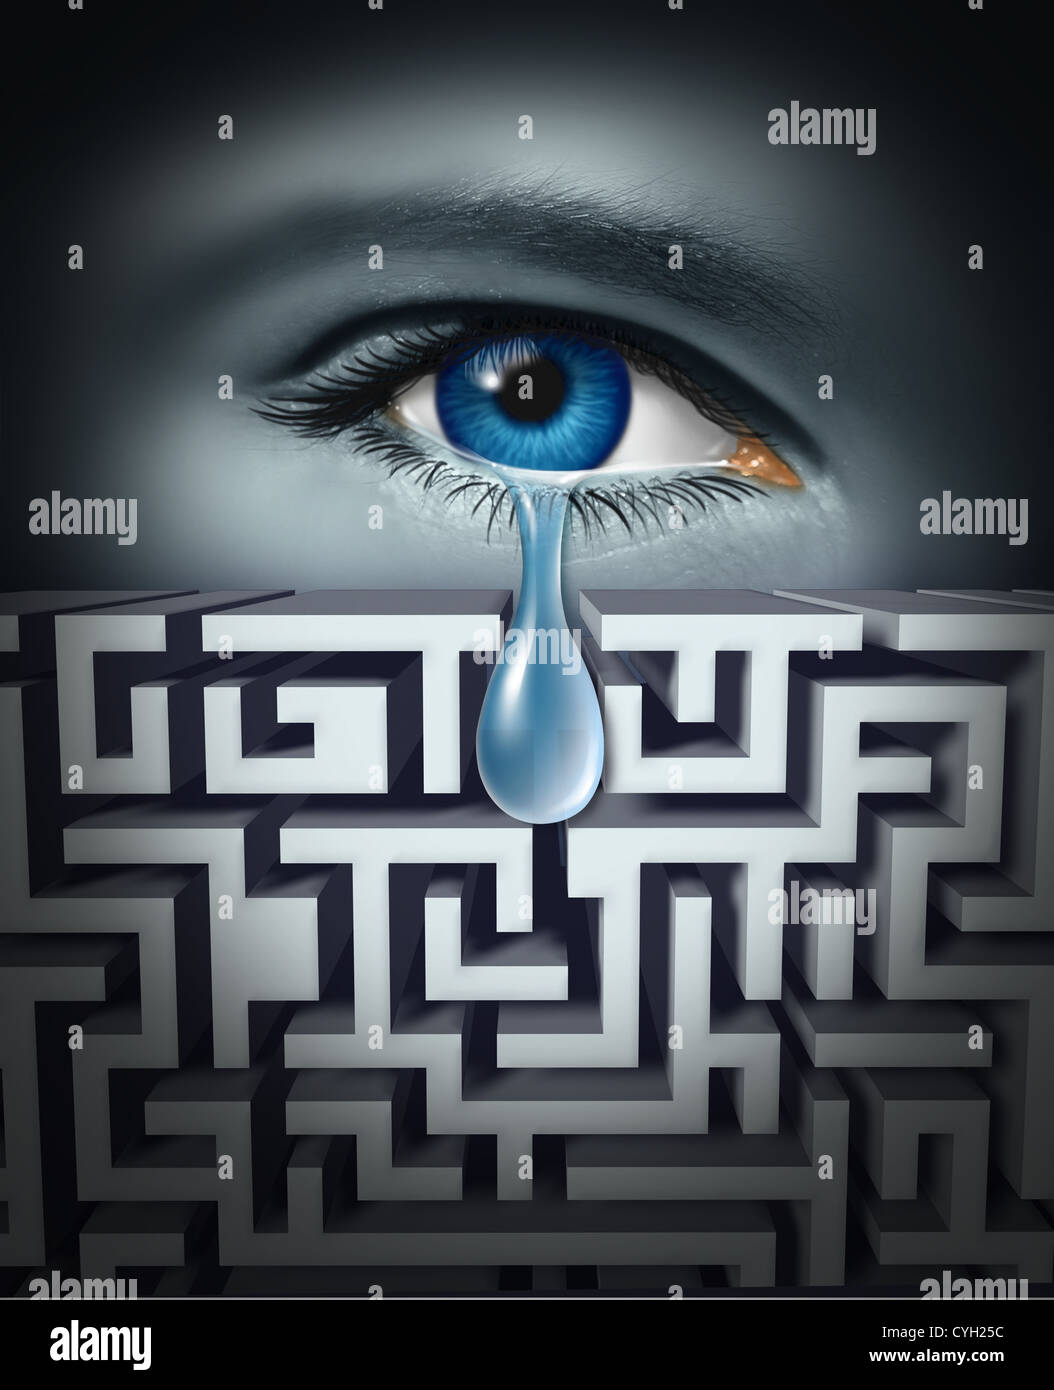 Schmerztherapie und den Umgang mit menschlichen physischen oder psychischen Leiden mit einem Auge Weinen eine einzelne Träne durch ein Labyrinth oder Labrynth als Konzept für die Suche nach Lösungen auf emotionalen Stress im Zusammenhang mit arbeiten oder Leben. Stockfoto